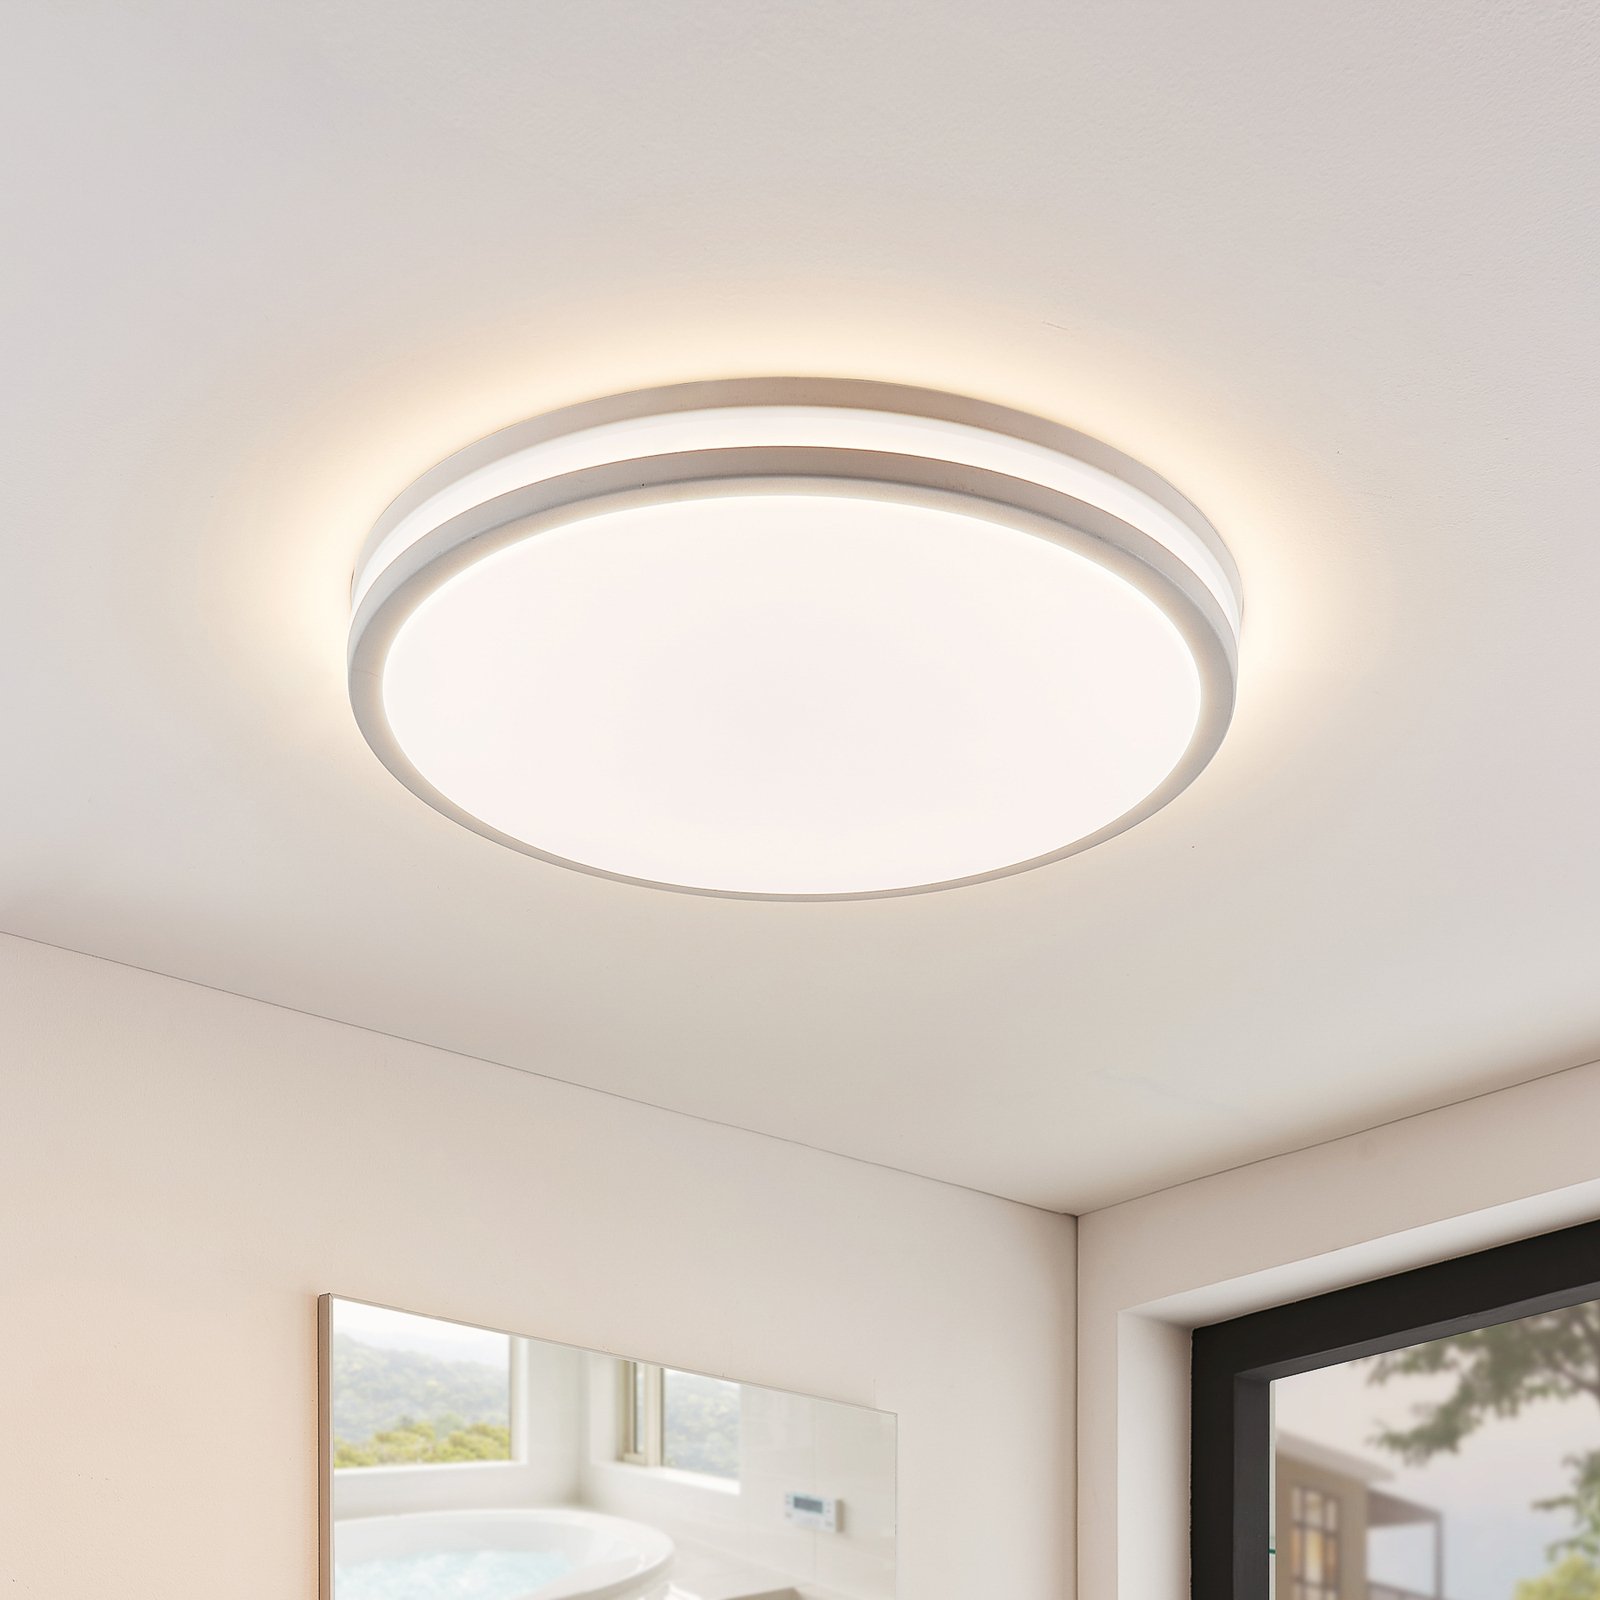 LED plafondlamp Arnim in wit, ronde vorm, IP44